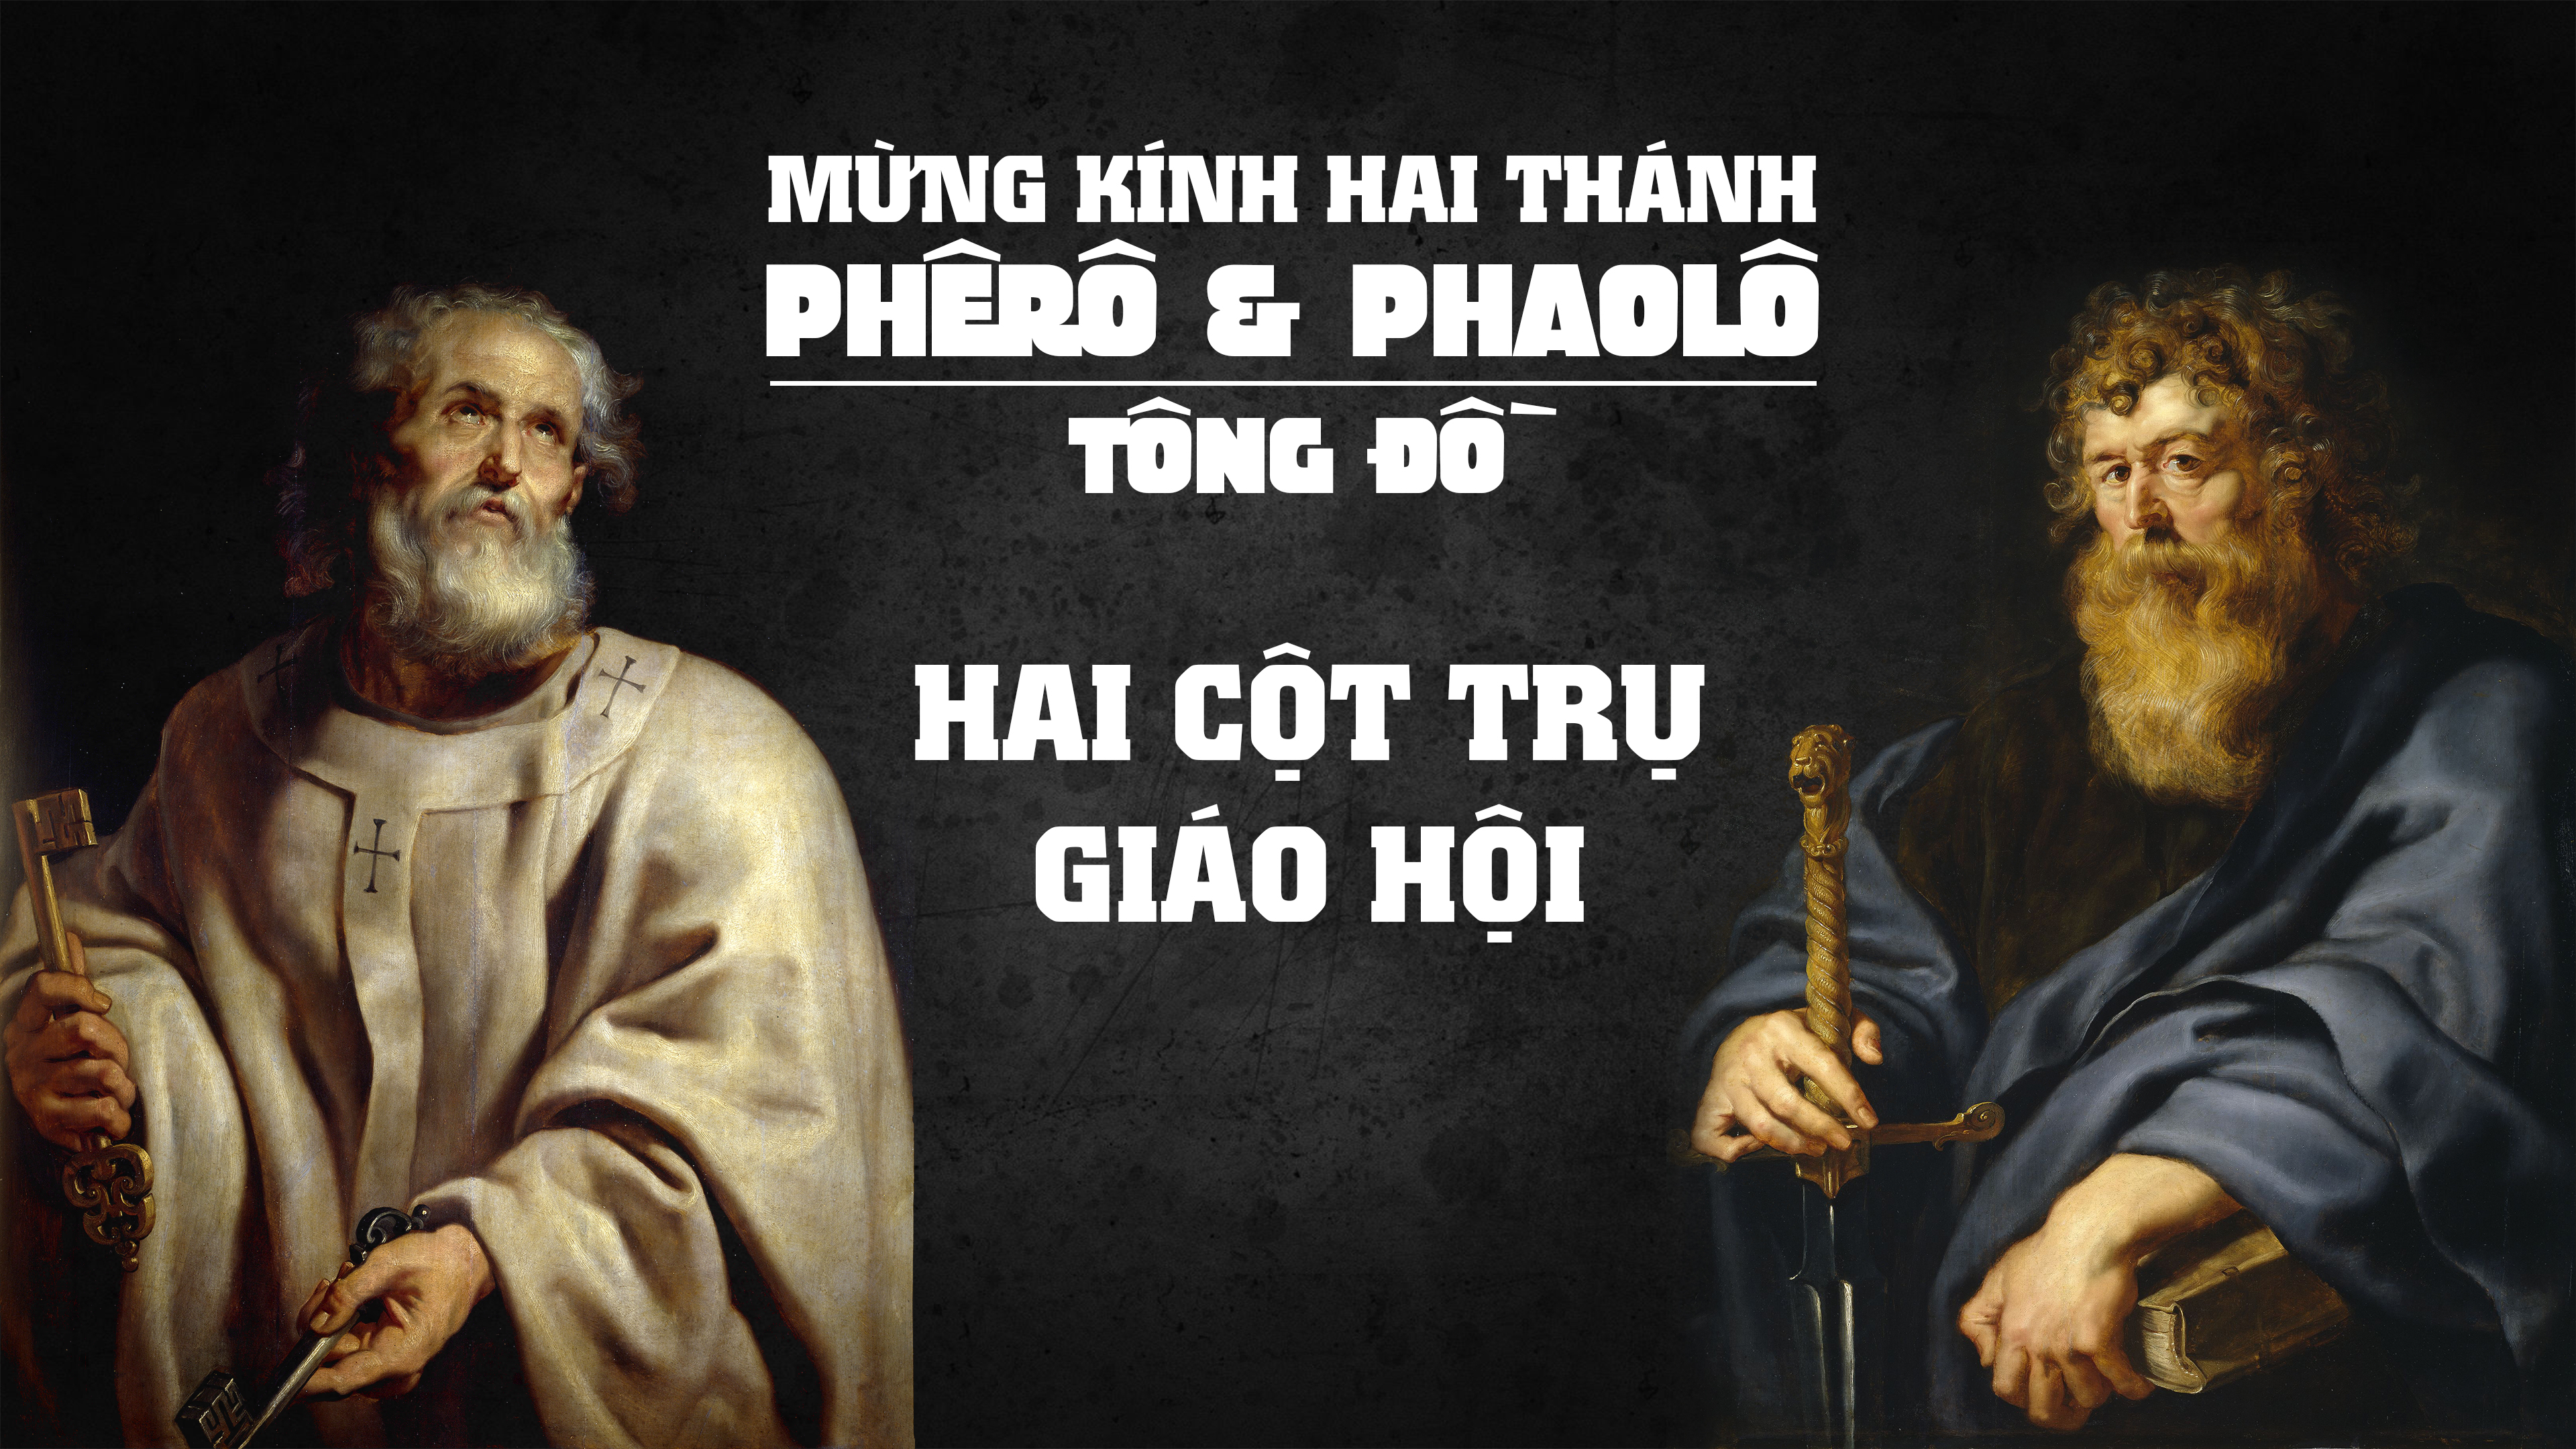 Ngày 29/06: Thánh Phêrô và thánh Phaolô, Tông đồ (Mt 16,13-19)